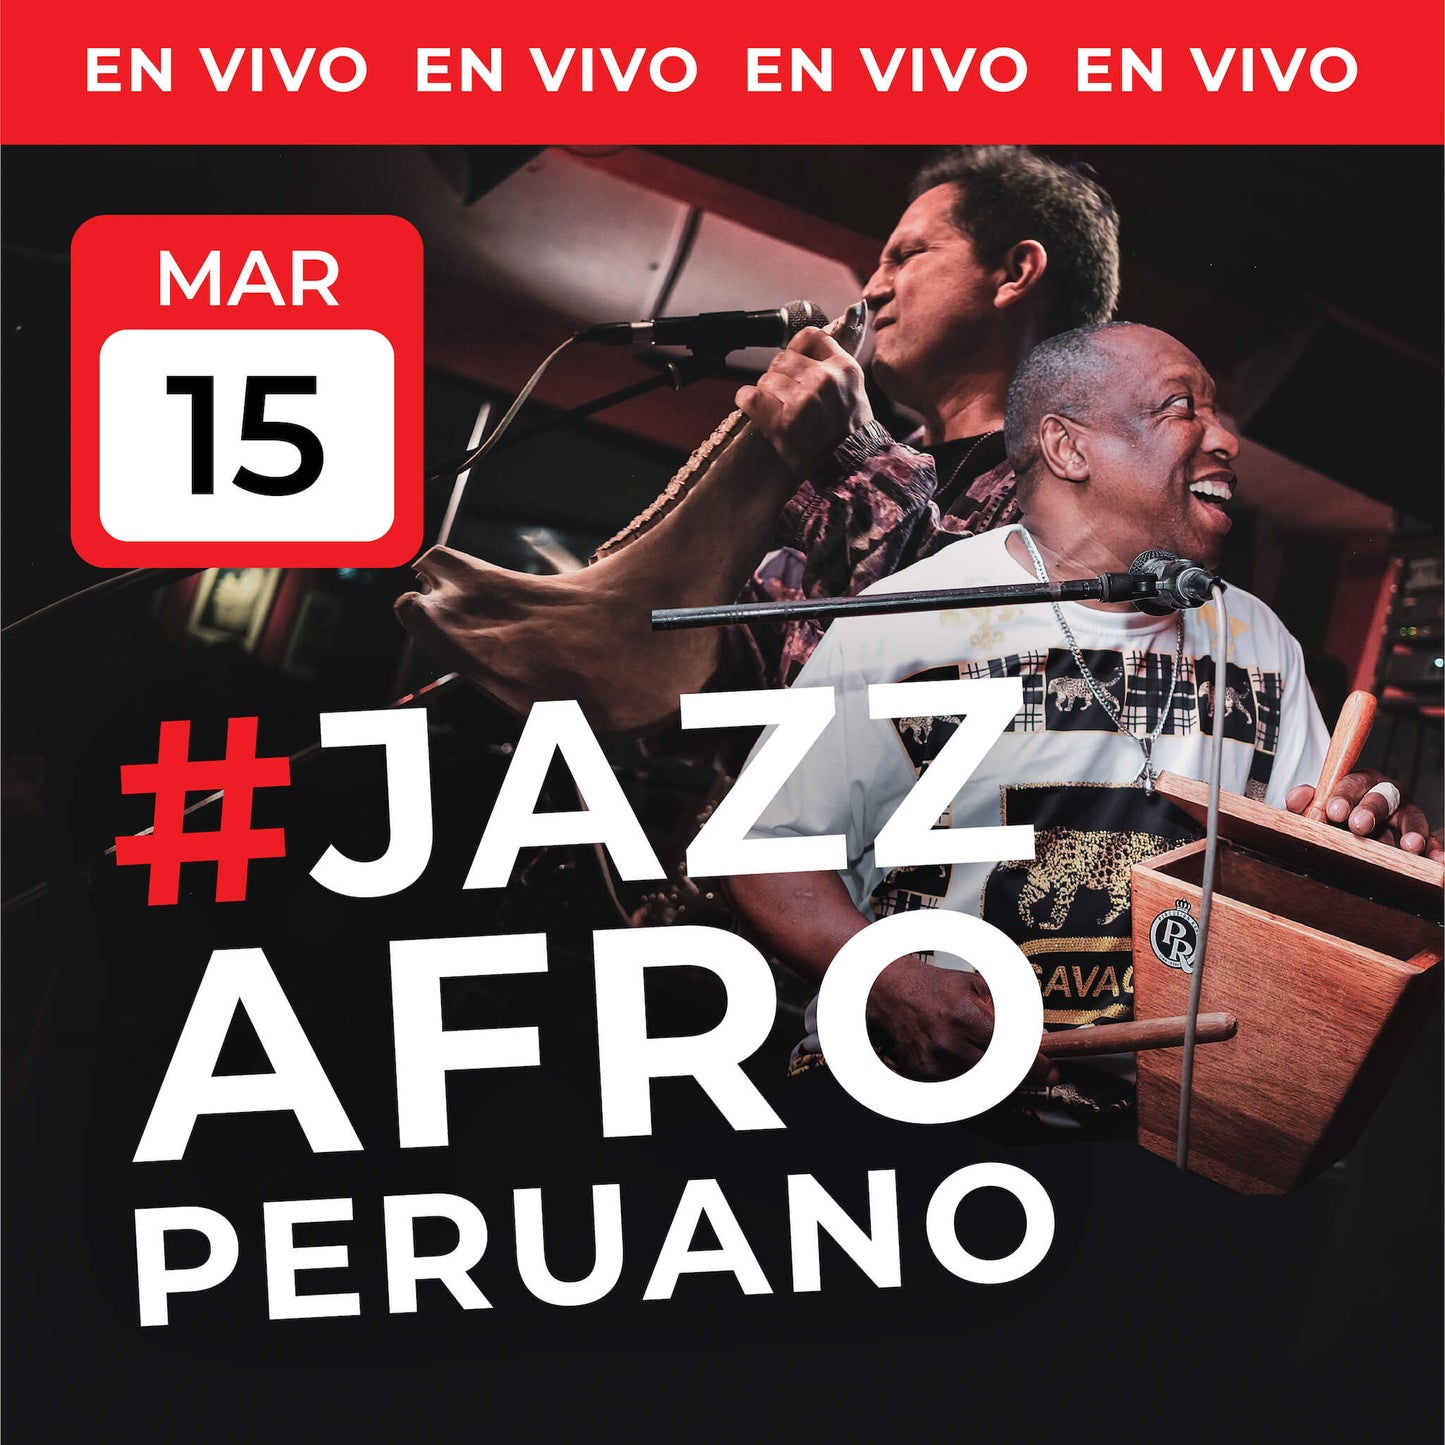 15 Mar | #JazzAfroperuano EN VIVO